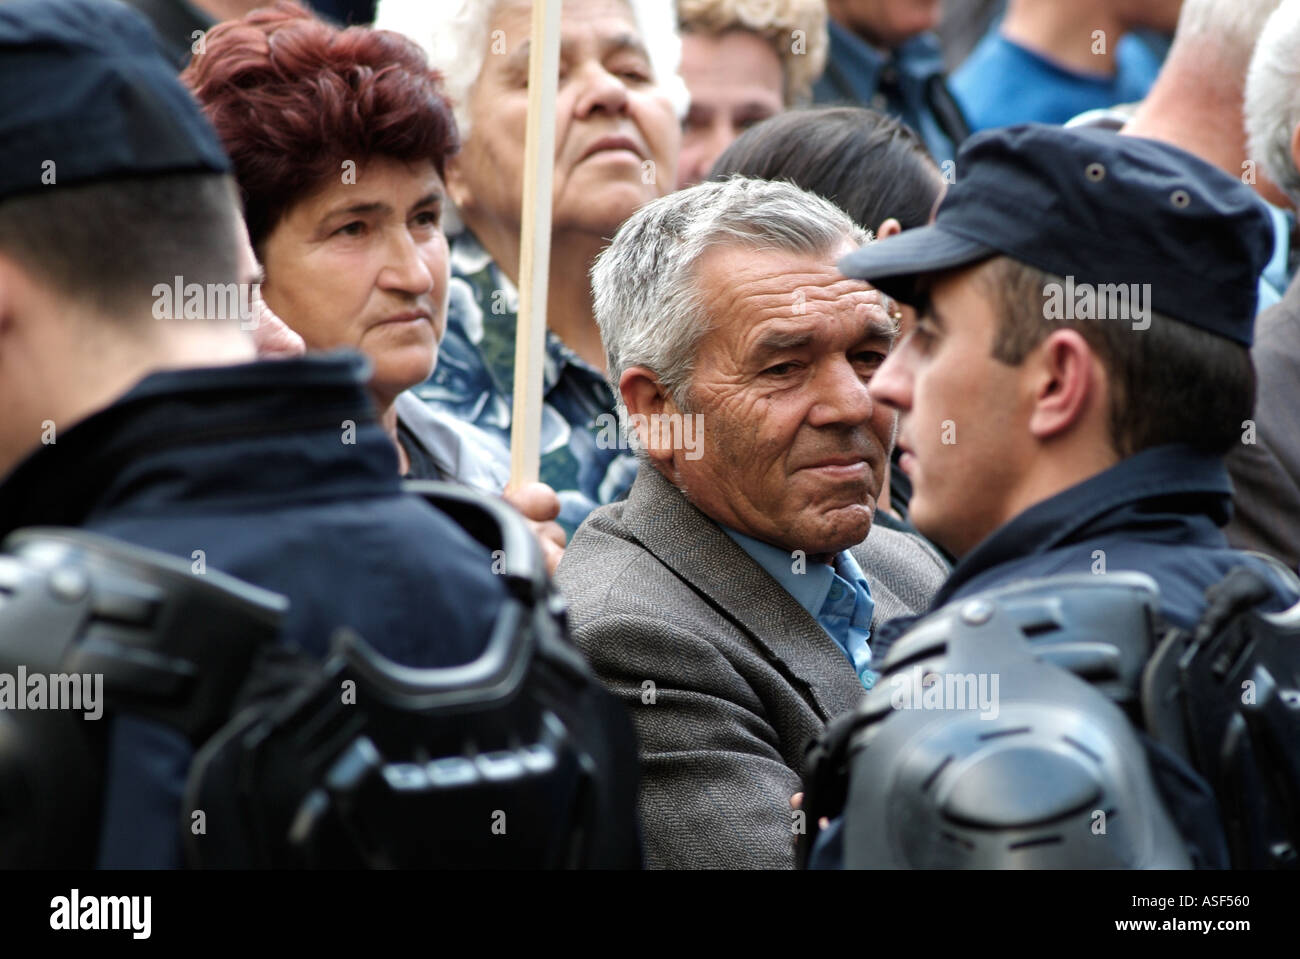 Volto nella folla durante una dimostrazione a Banja Luka, Bosnia Erzegovina. Foto Stock